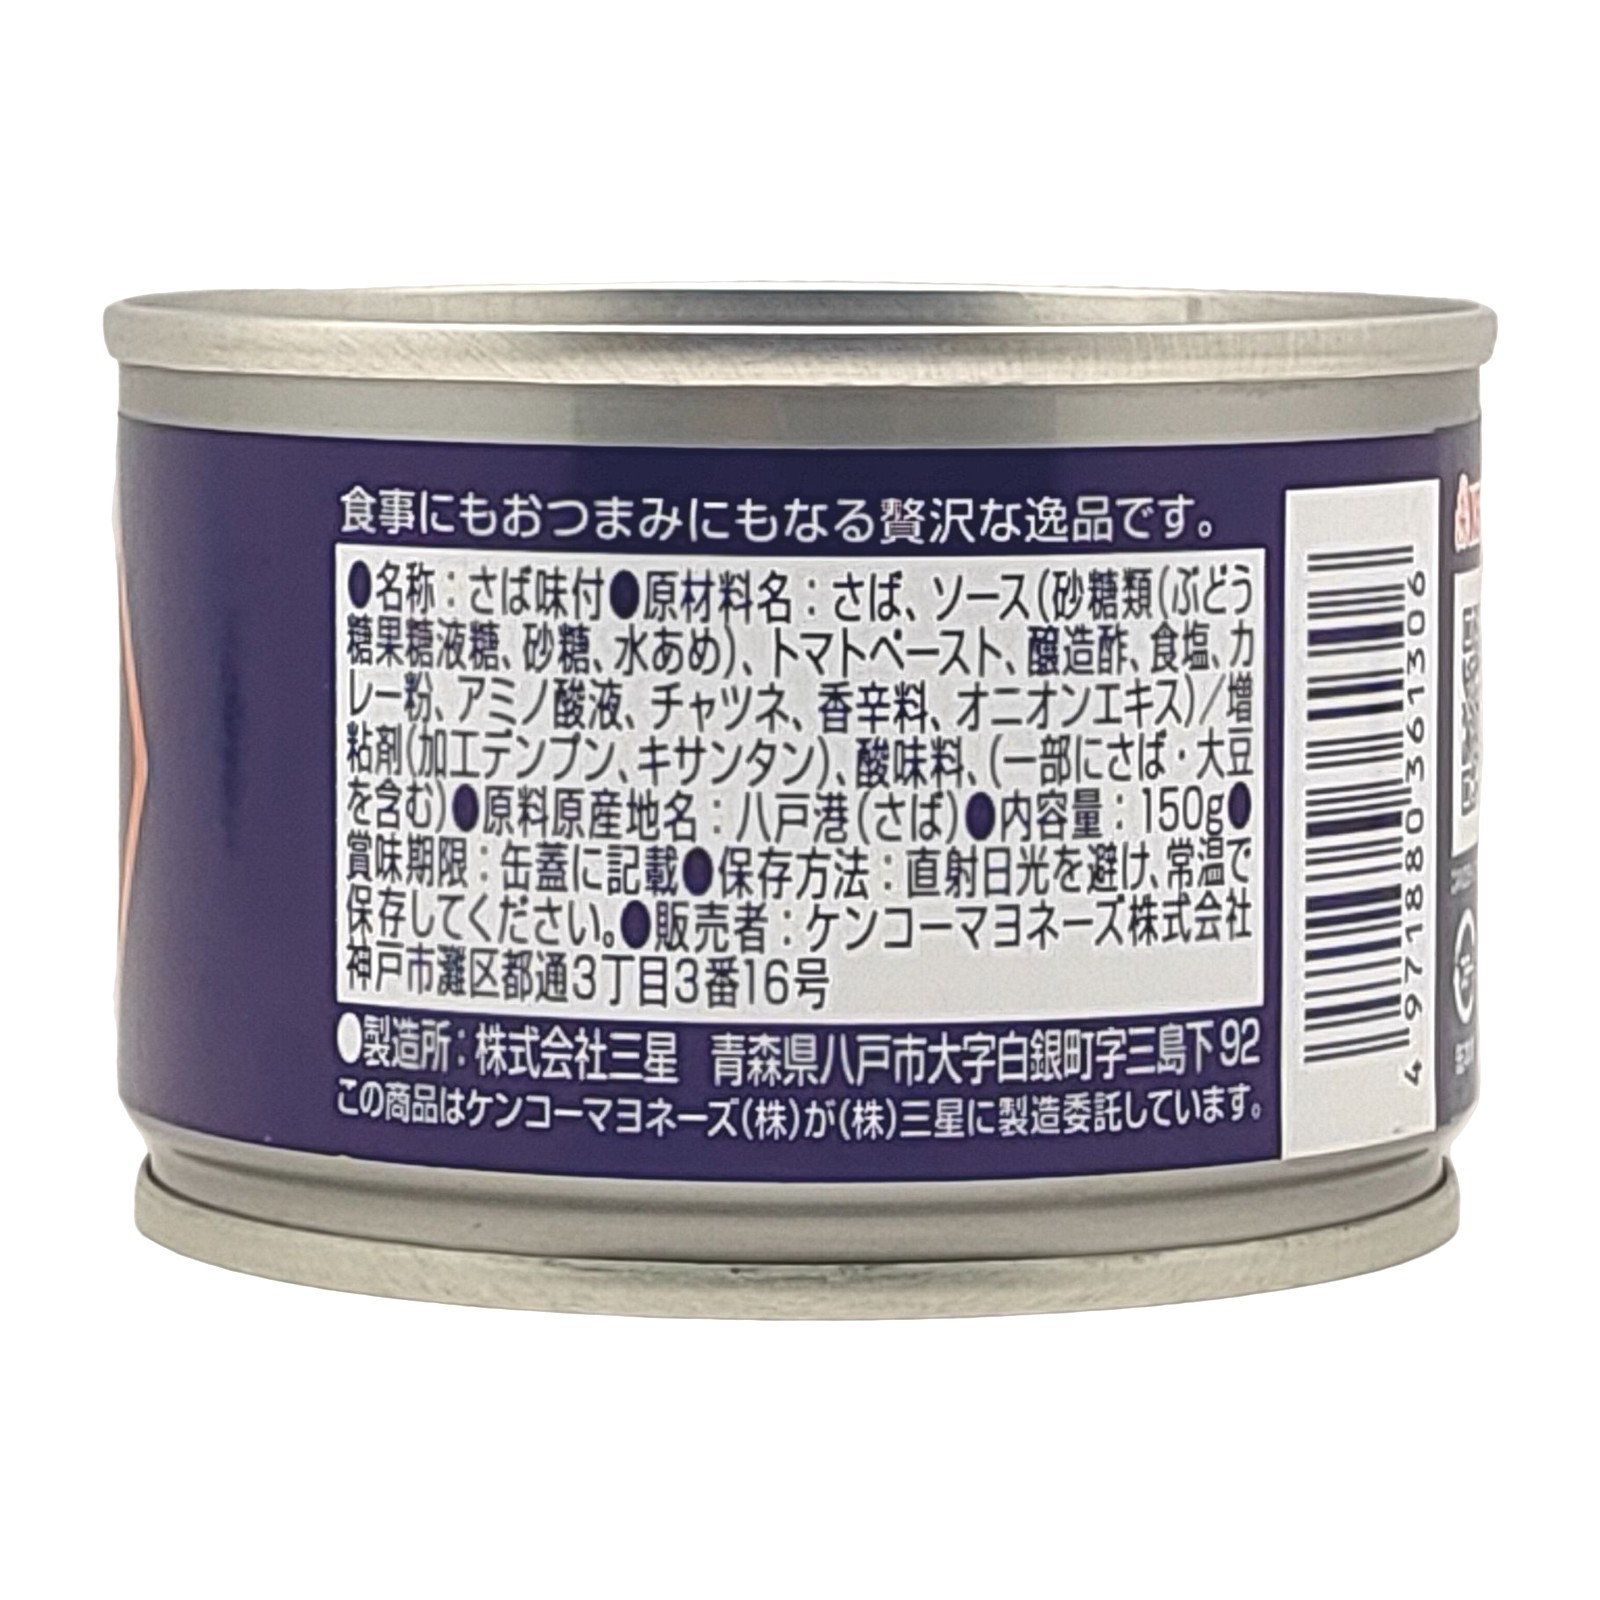 【日本缶詰大賞 グランプリ受賞】CANDISH　魔性のカリーケチャップ サムネイル2